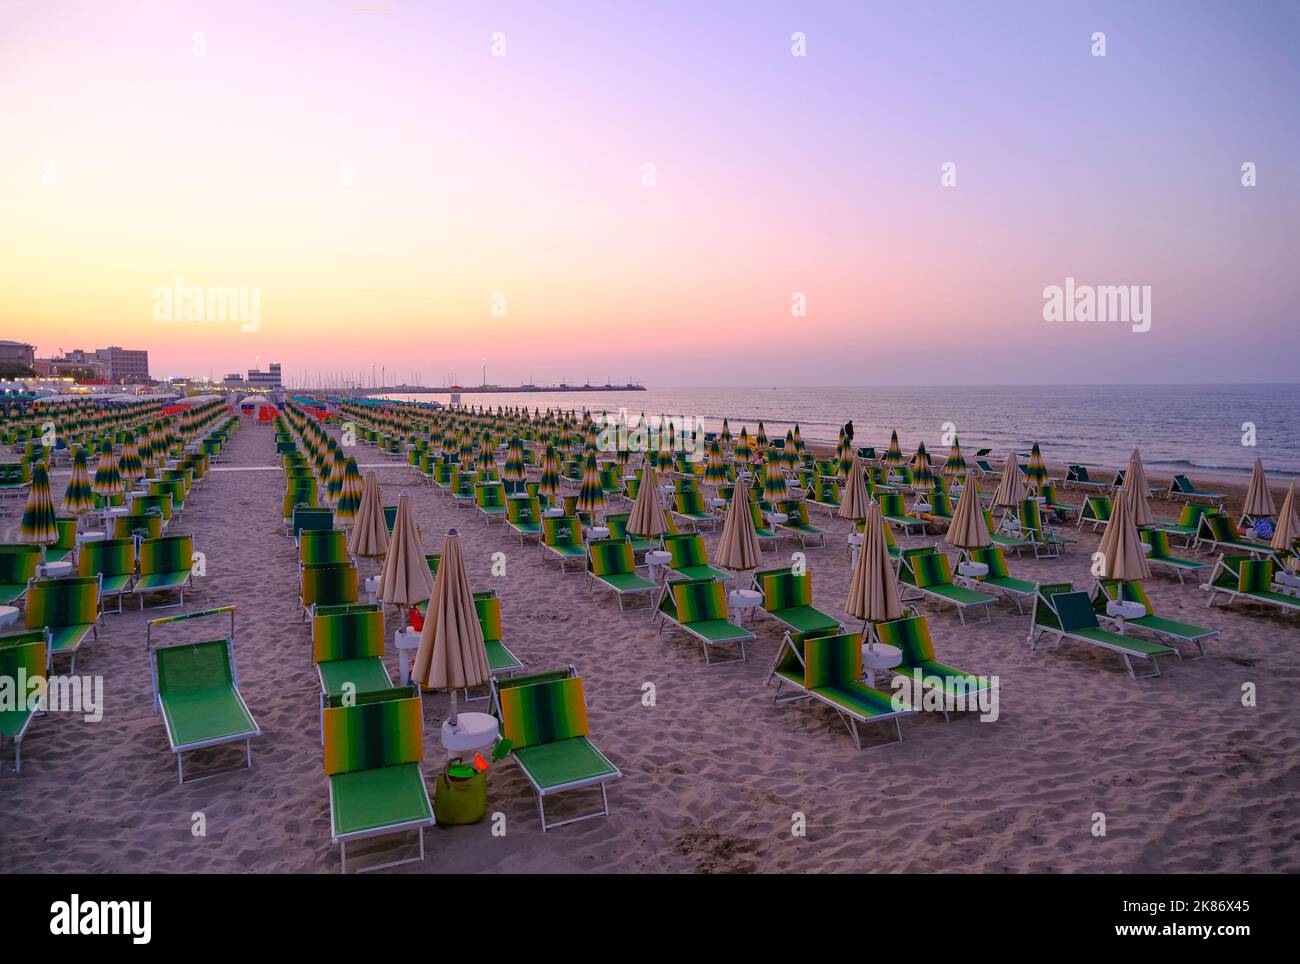 parasols et chaises longues sur la plage, face au coucher du soleil. Vacances d'été. Senigallia, Italie Banque D'Images